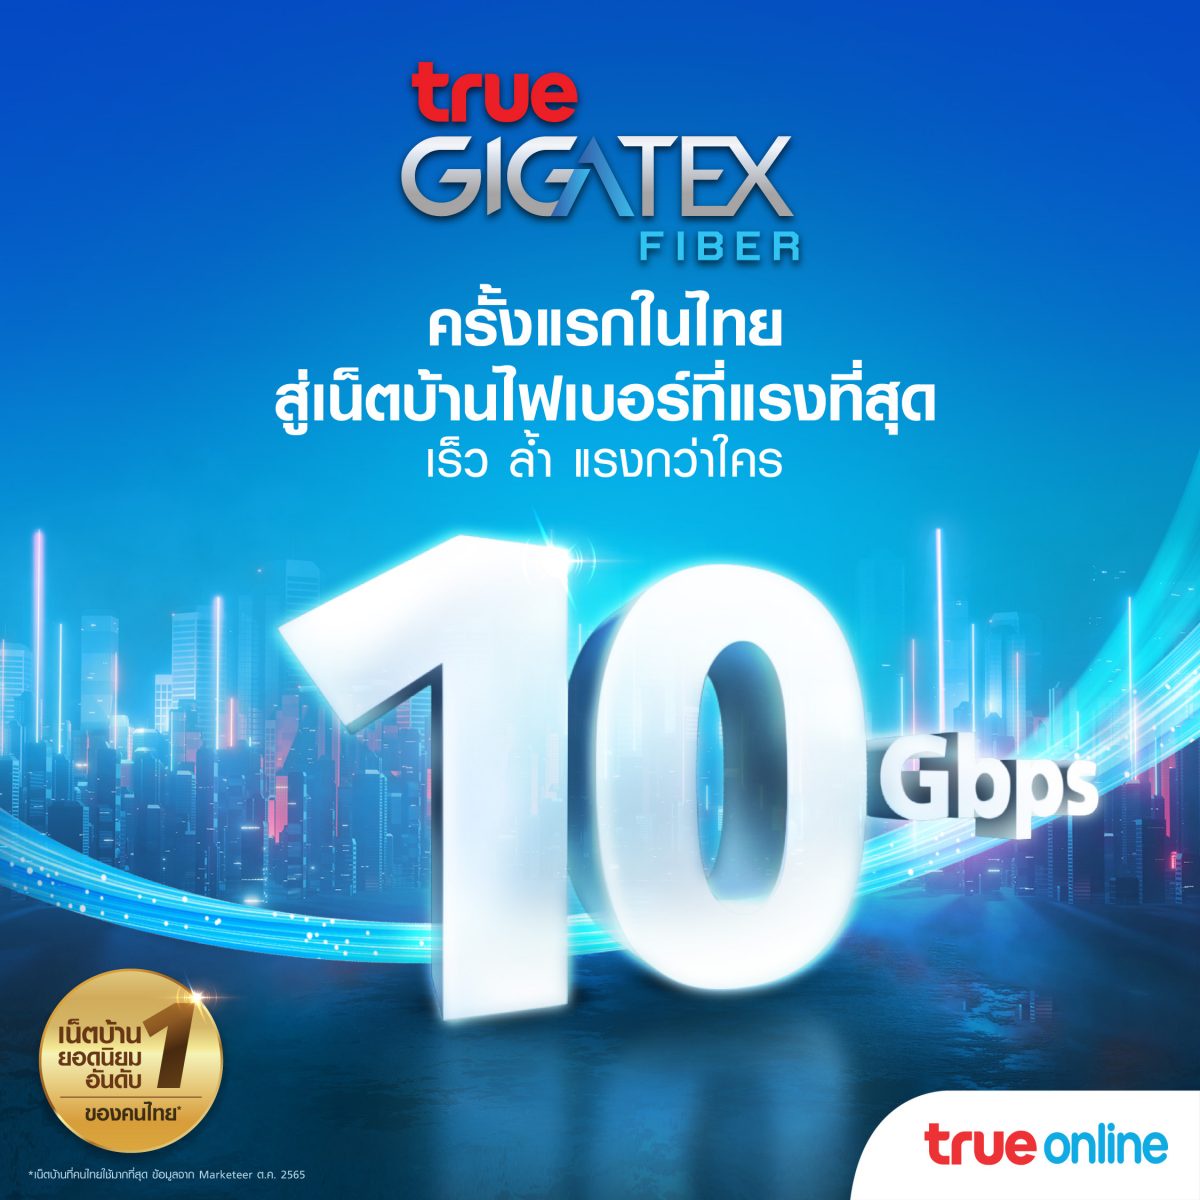 ทรูออนไลน์ สร้างปรากฏการณ์ใหม่เน็ตบ้านไฟเบอร์แรงสุด.10 Gbps ครั้งแรก ในไทย ! นำร่องร่วมกับ แมกโนเลียส์ ราชดำริ บูเลอวาร์ด ส่งแพ็กเกจ True Gigatex Premium 10